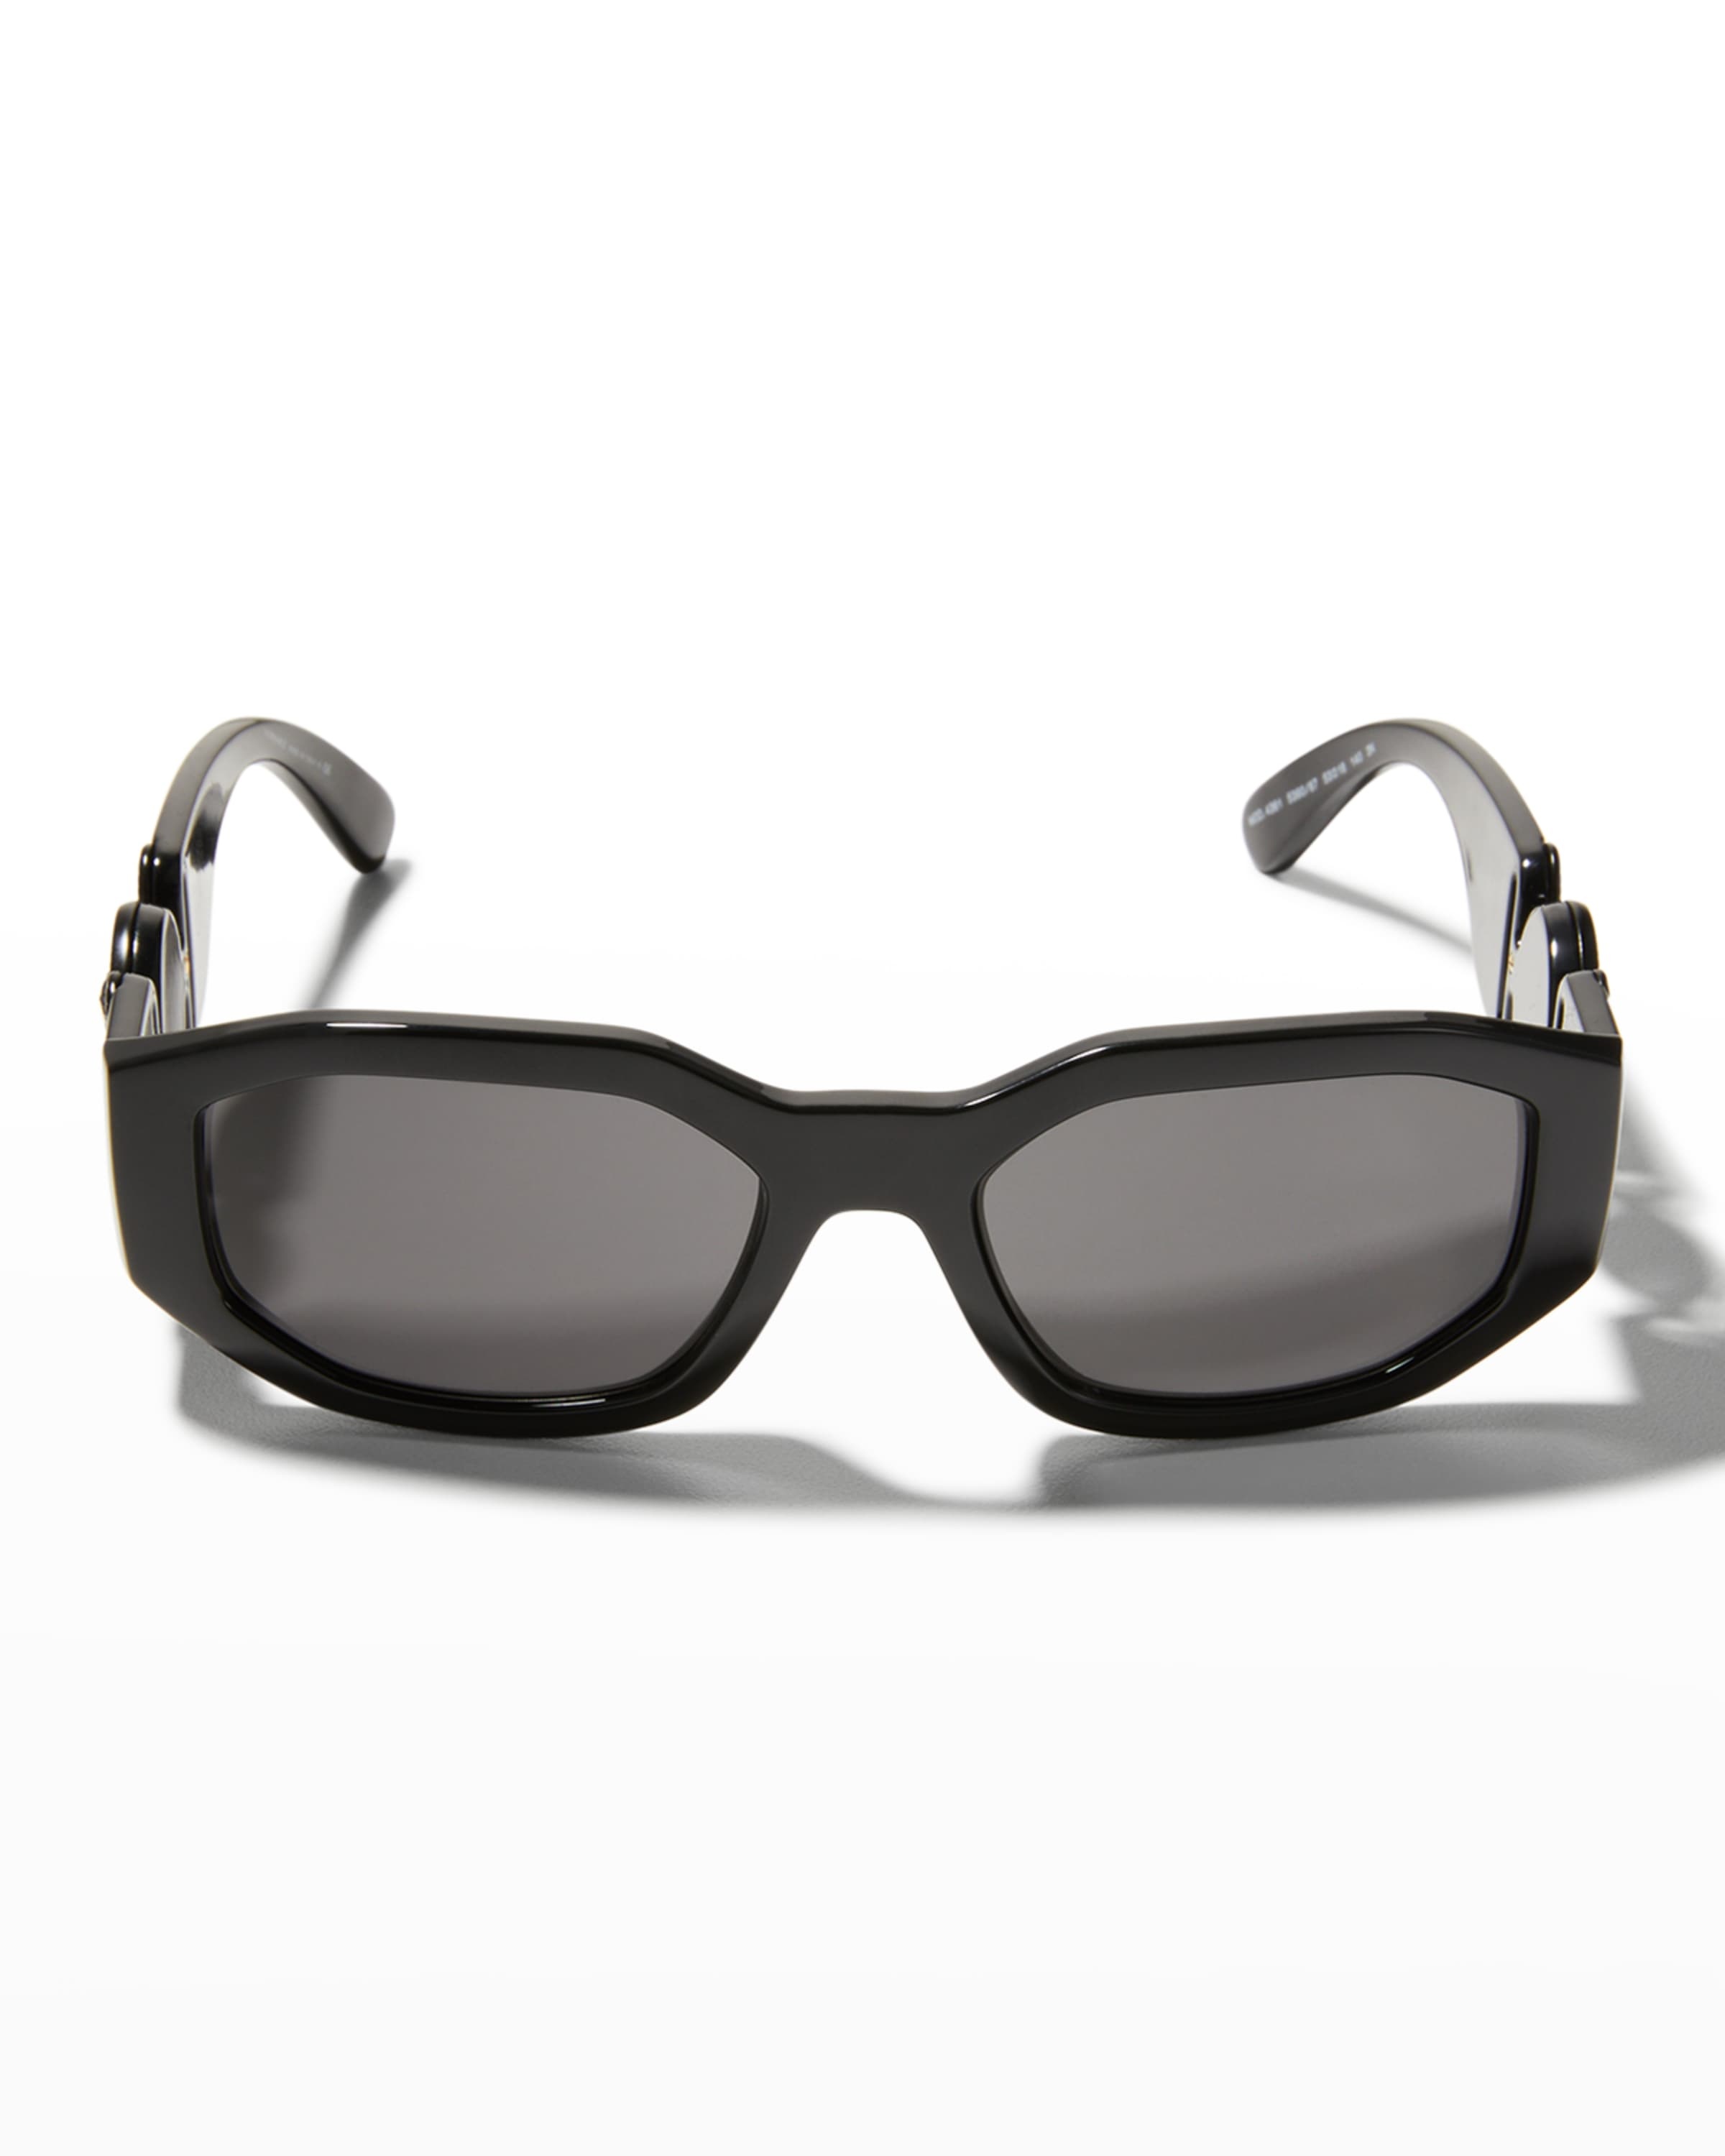 Men's Geometric Propionate Sunglasses - 3